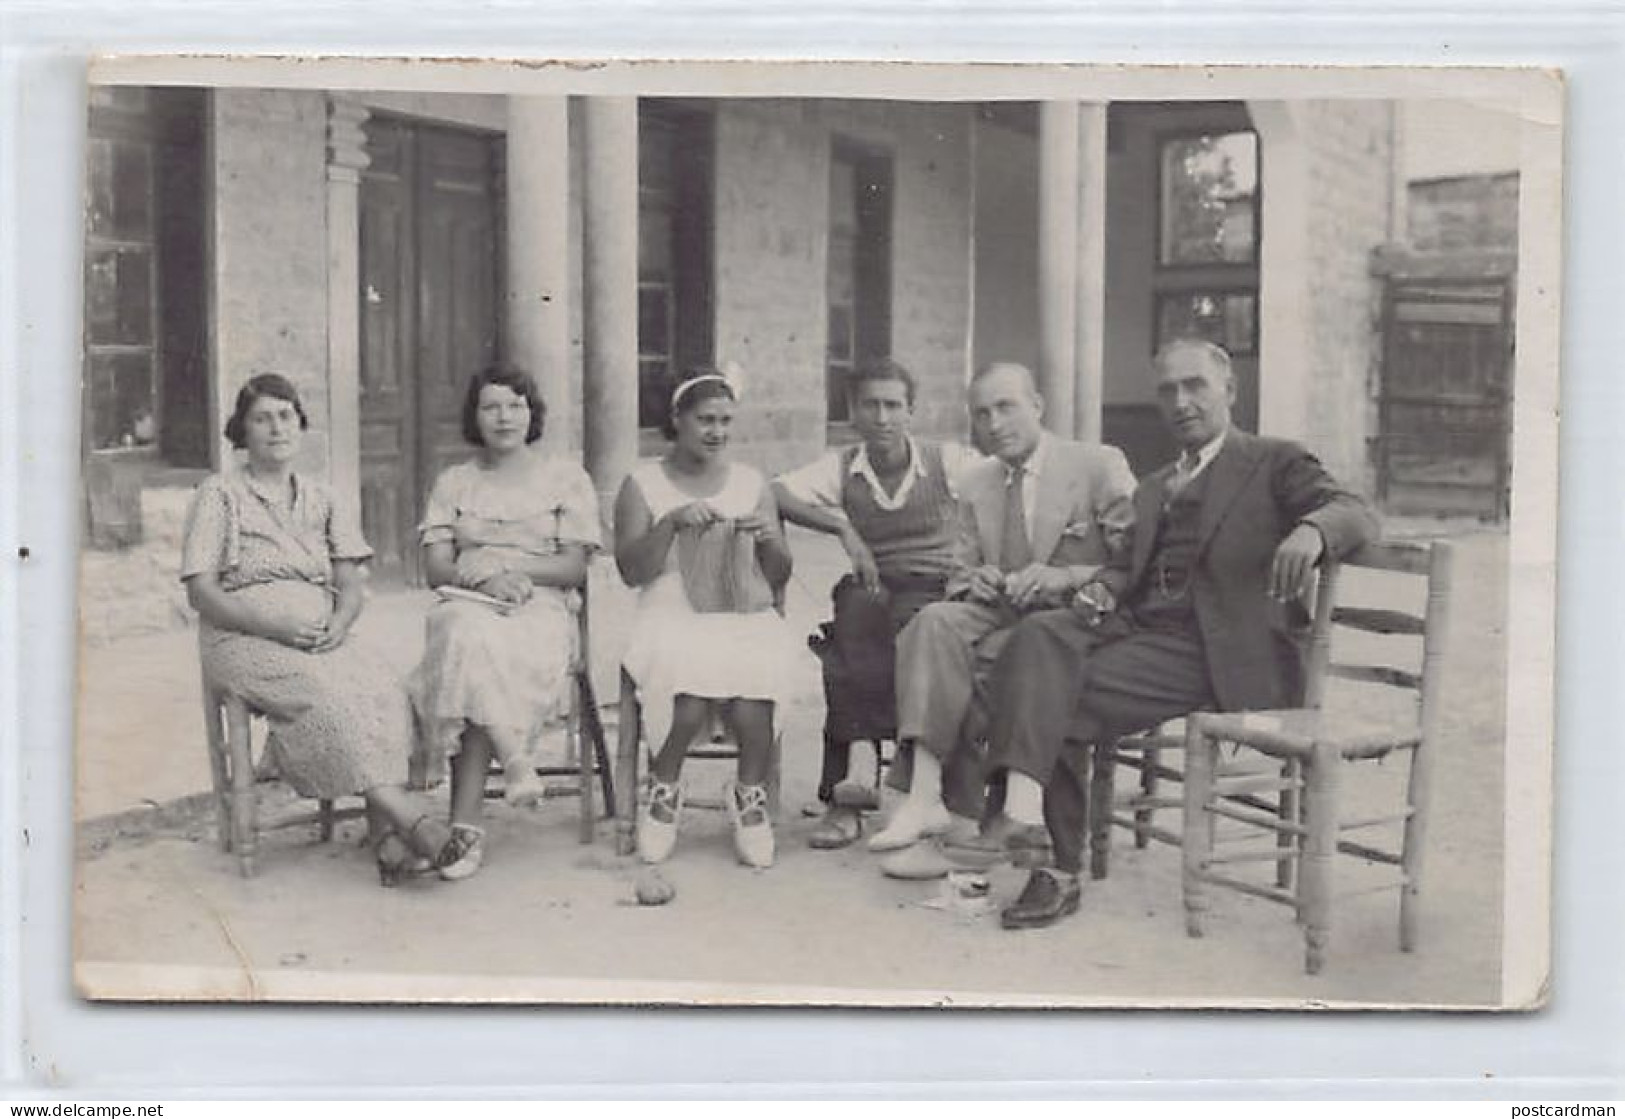 Liban - SOUK EL GHARB - Professeurs Et élèves De L'Ecole Américaine - CARTE PHOTO Datée Du 19 Septembre 1937 - Liban